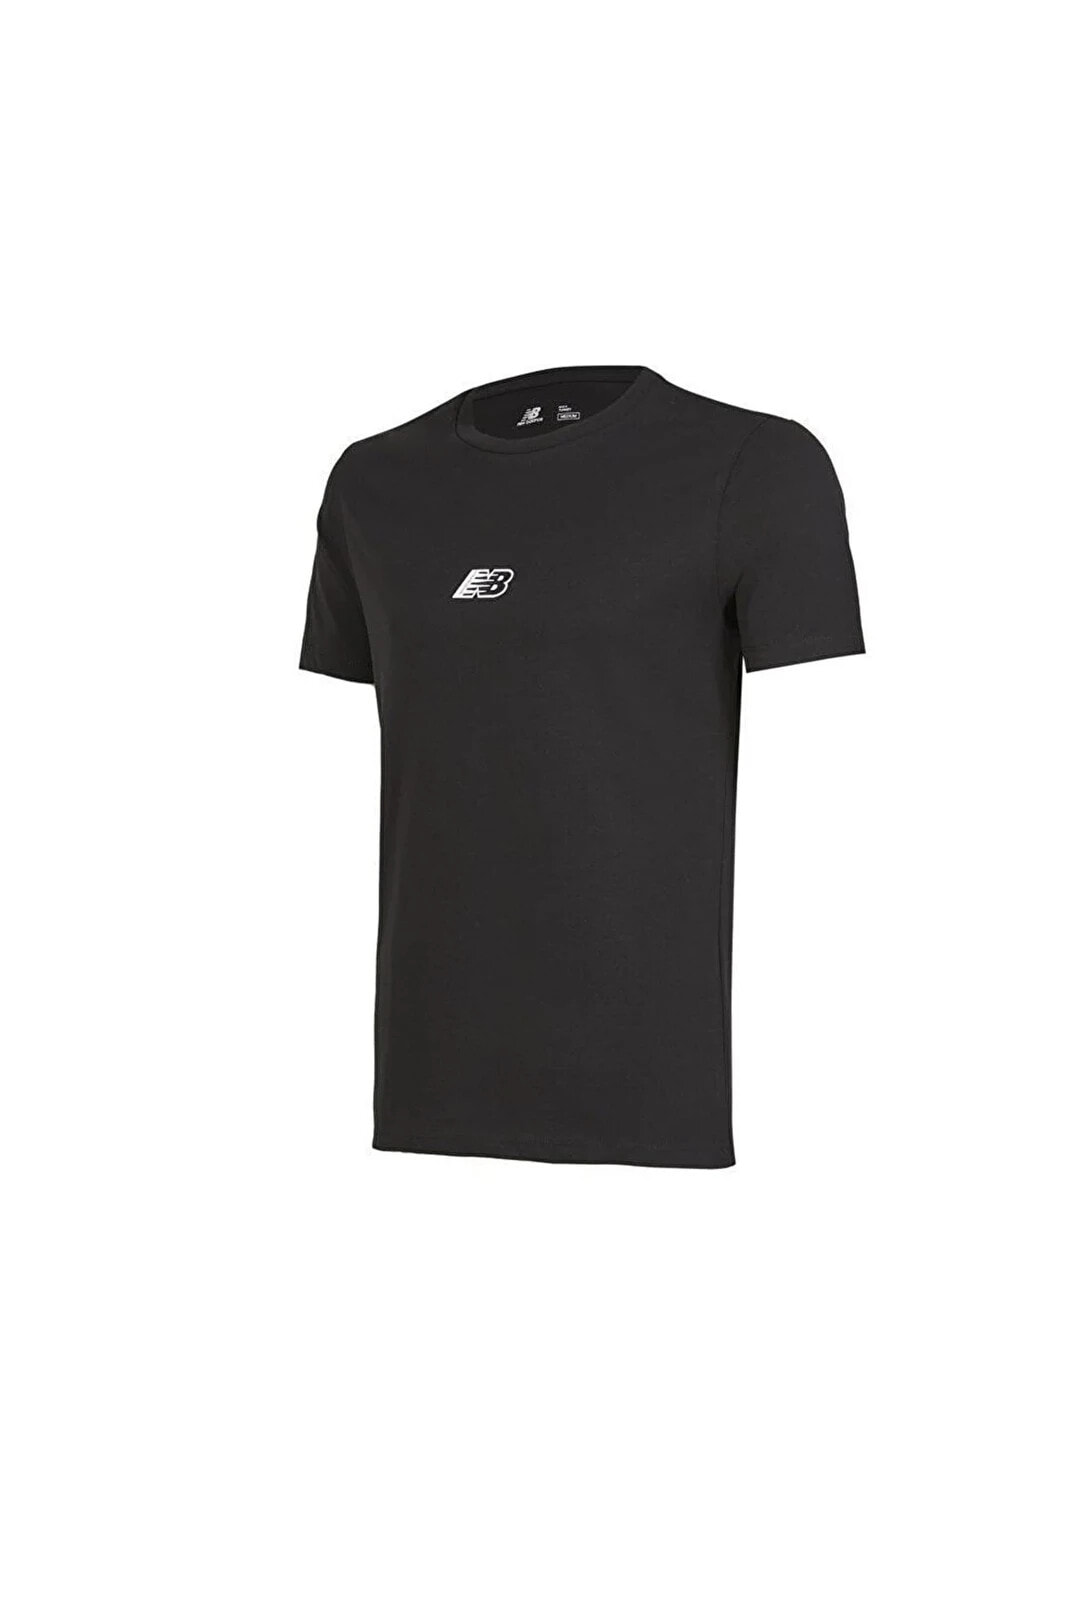 Erkek Siyah T-shirt Mnt1347-bk